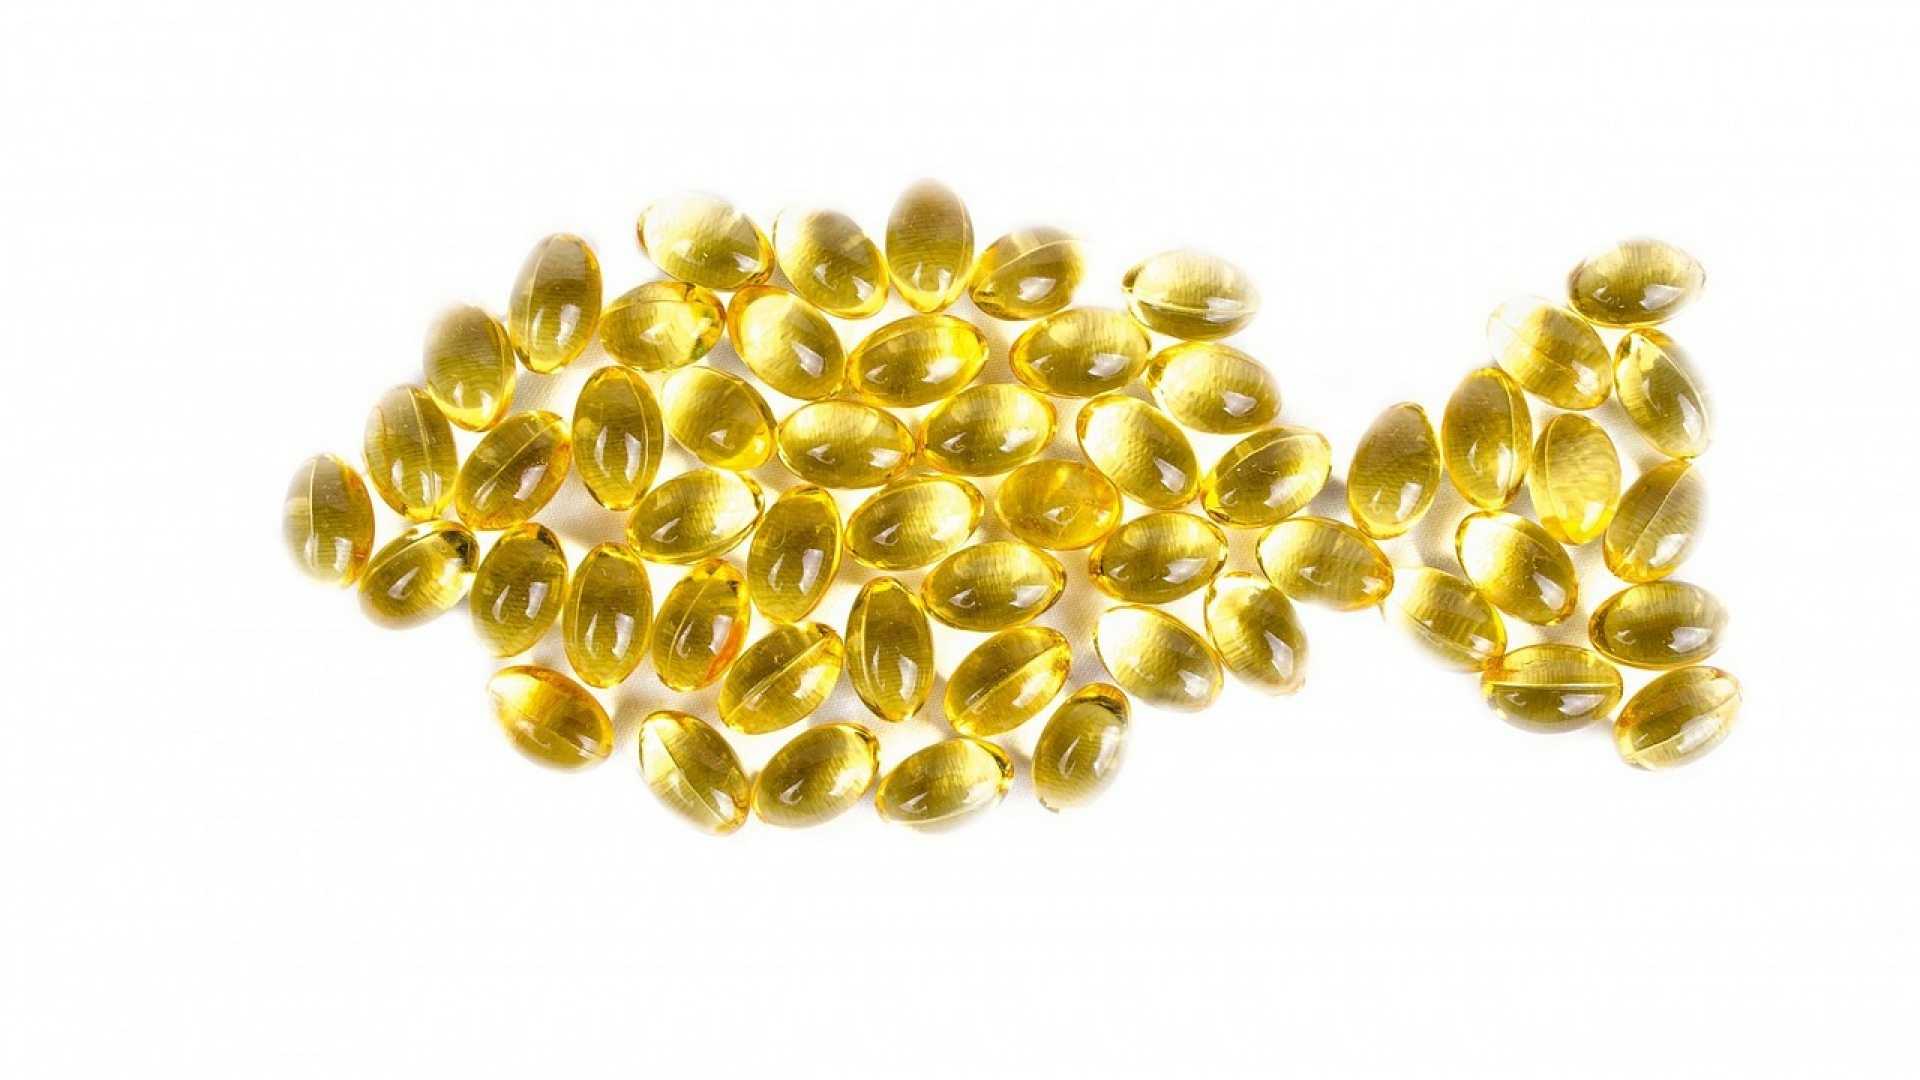 Lazacolaj növeli az omega-3 szintet a vérben, ezáltal segít fogyni